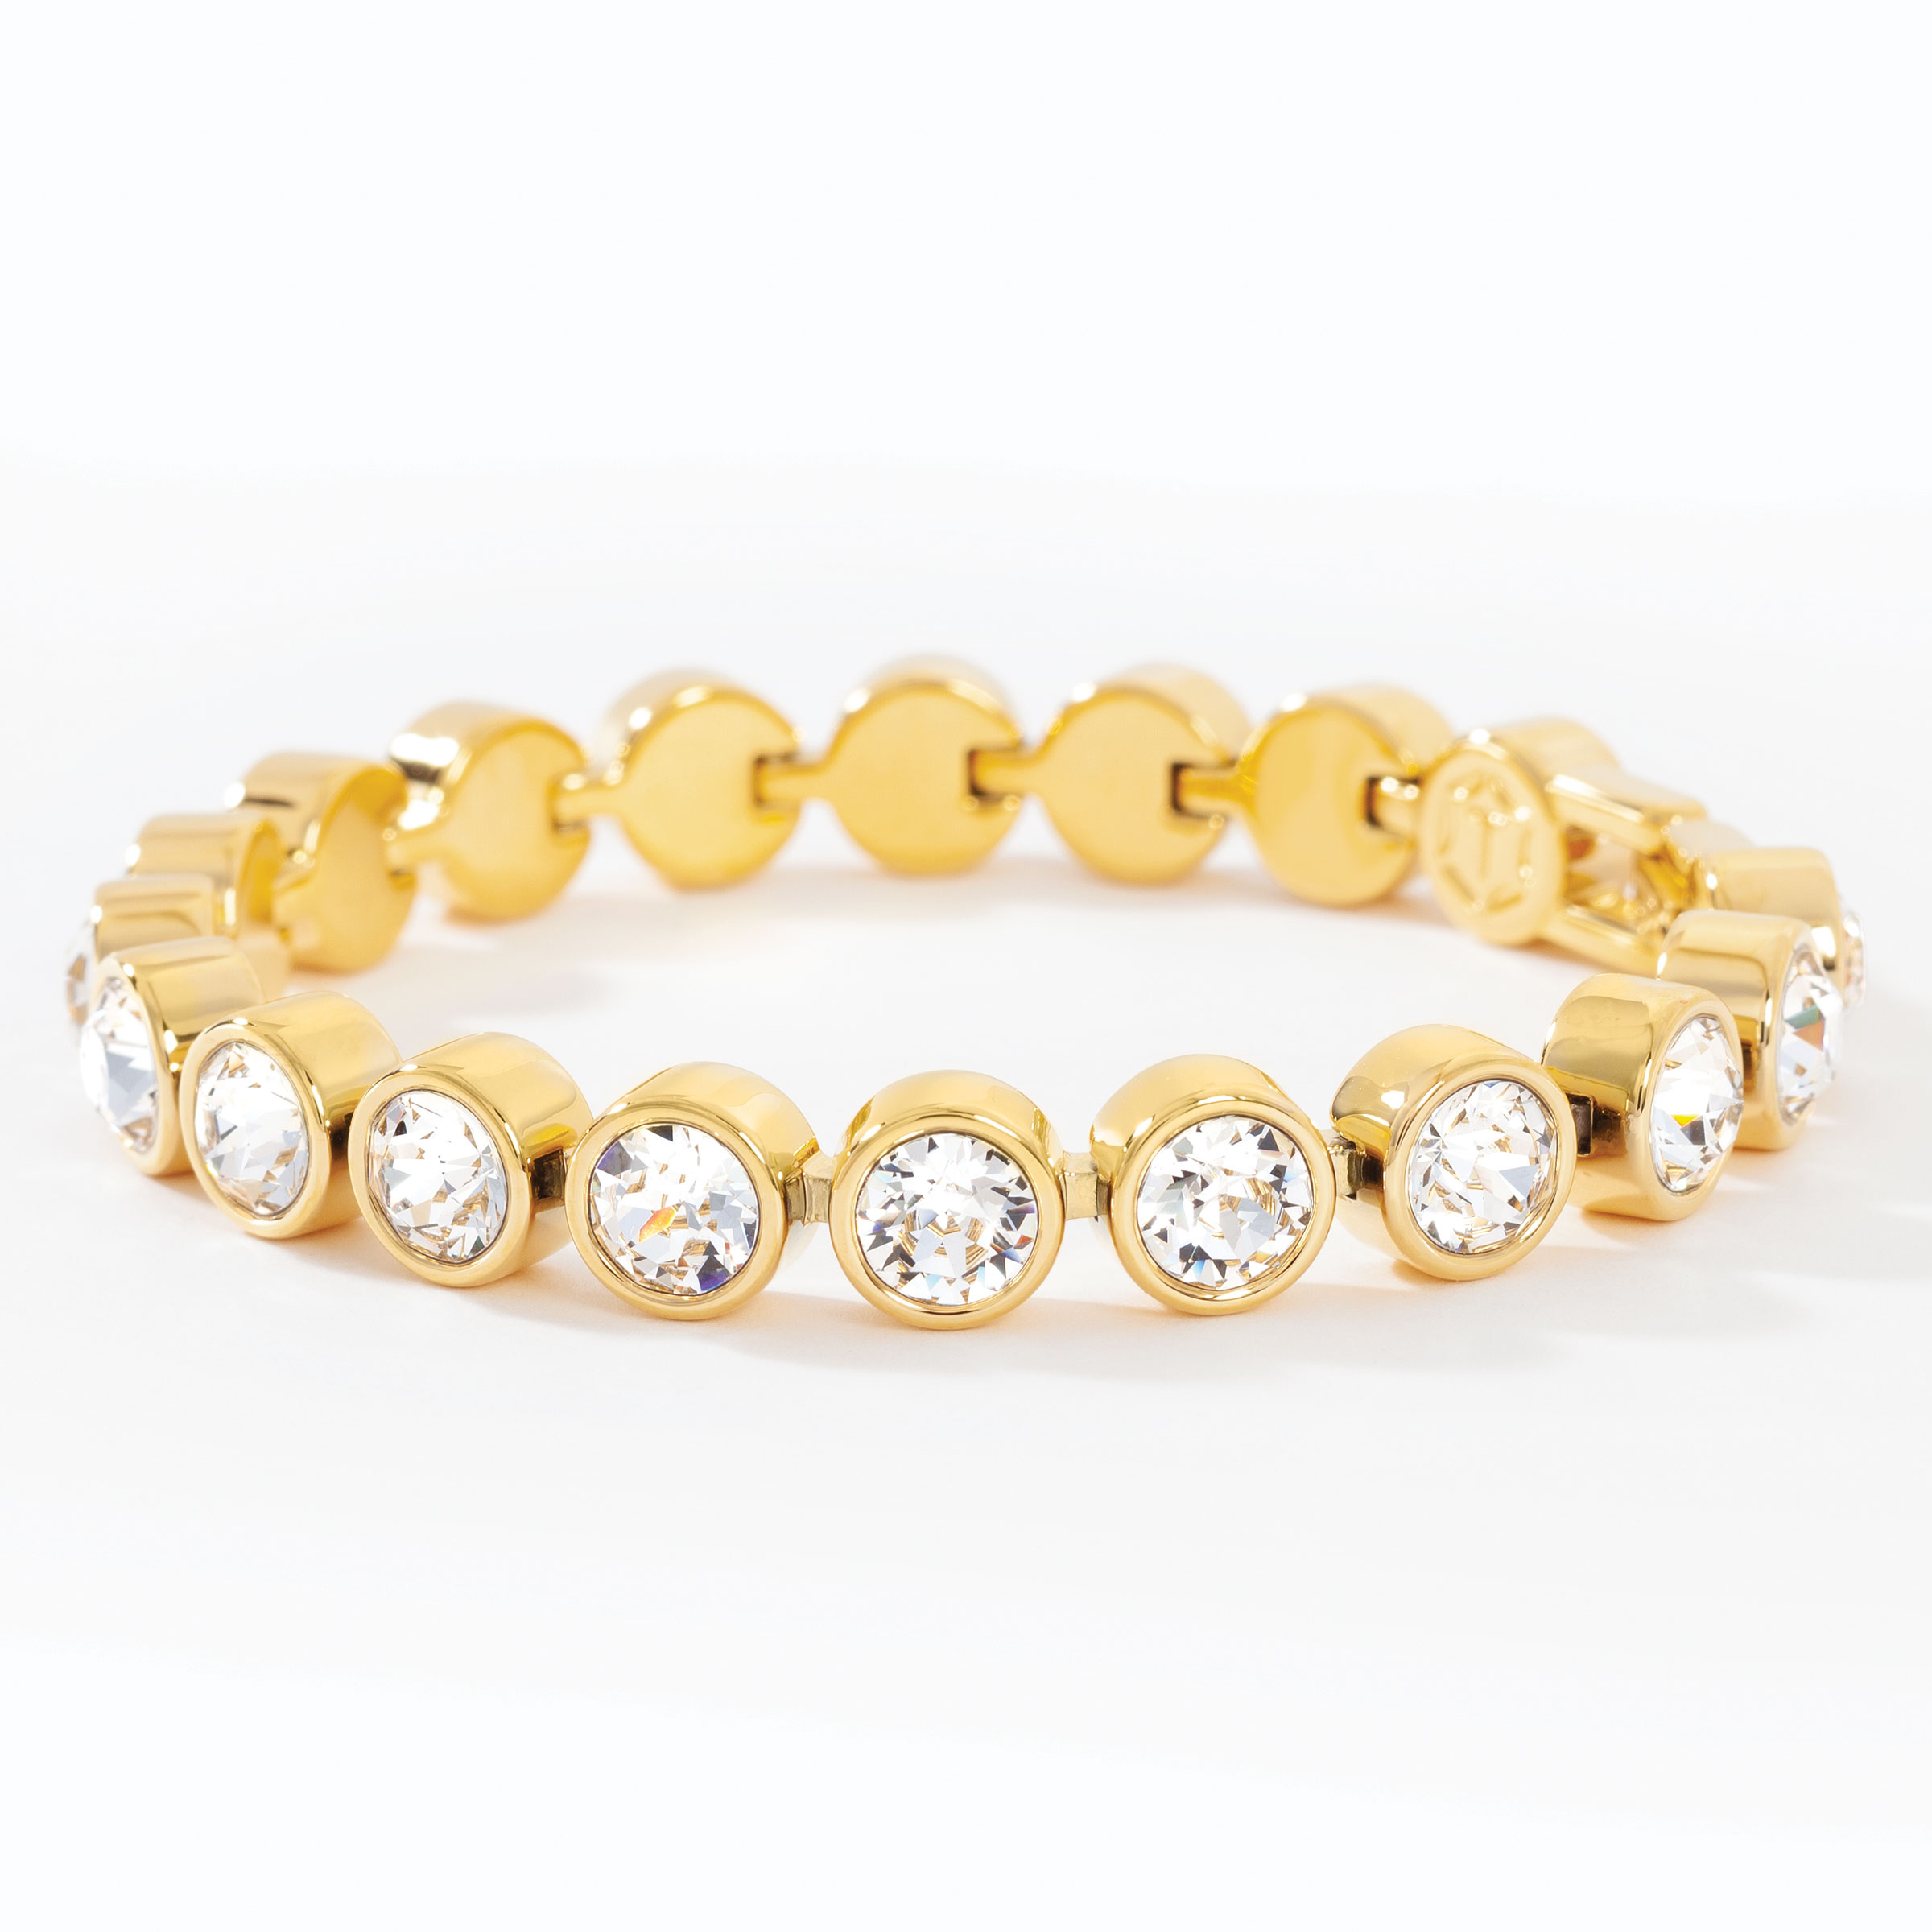 Schipperke Jewelry Gold Bracelet by Touchstone 